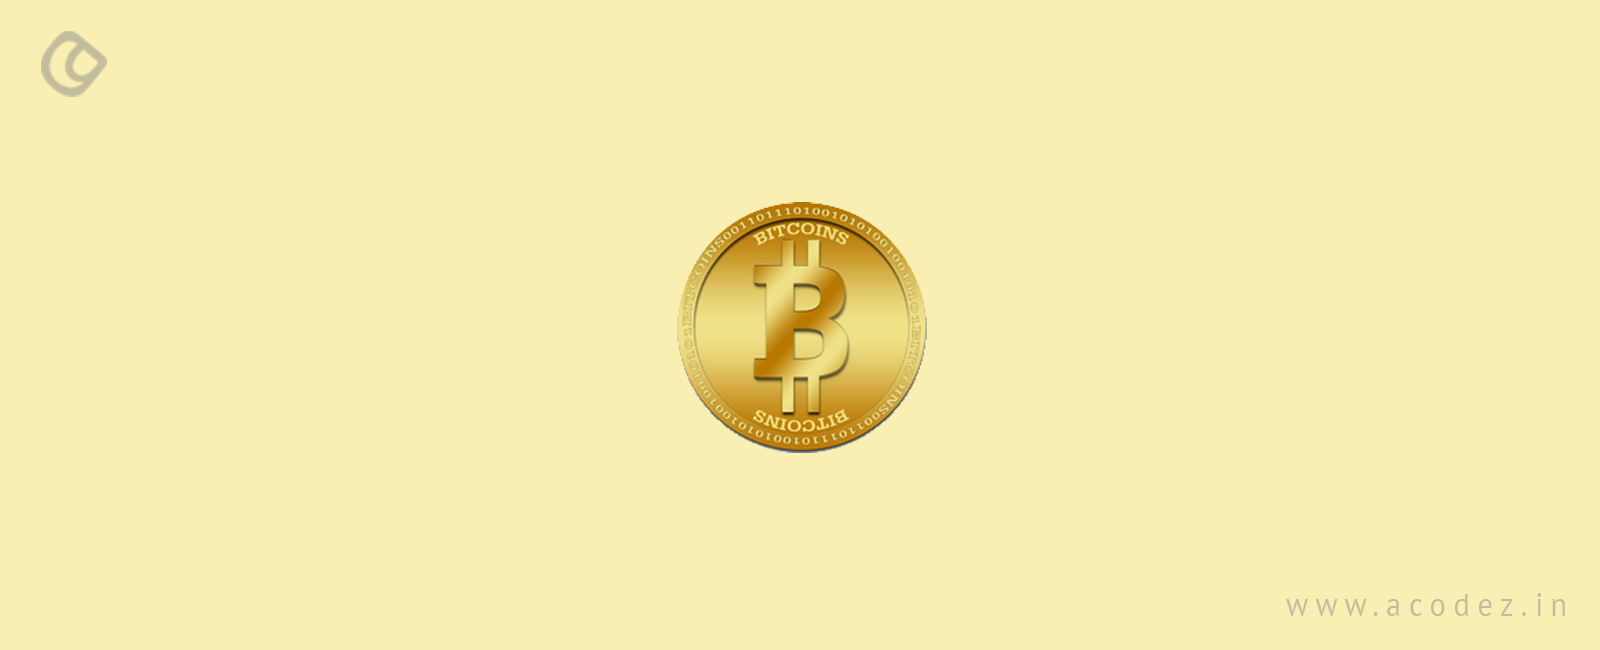 fektessen be bitcoin vs bitcoin készpénz